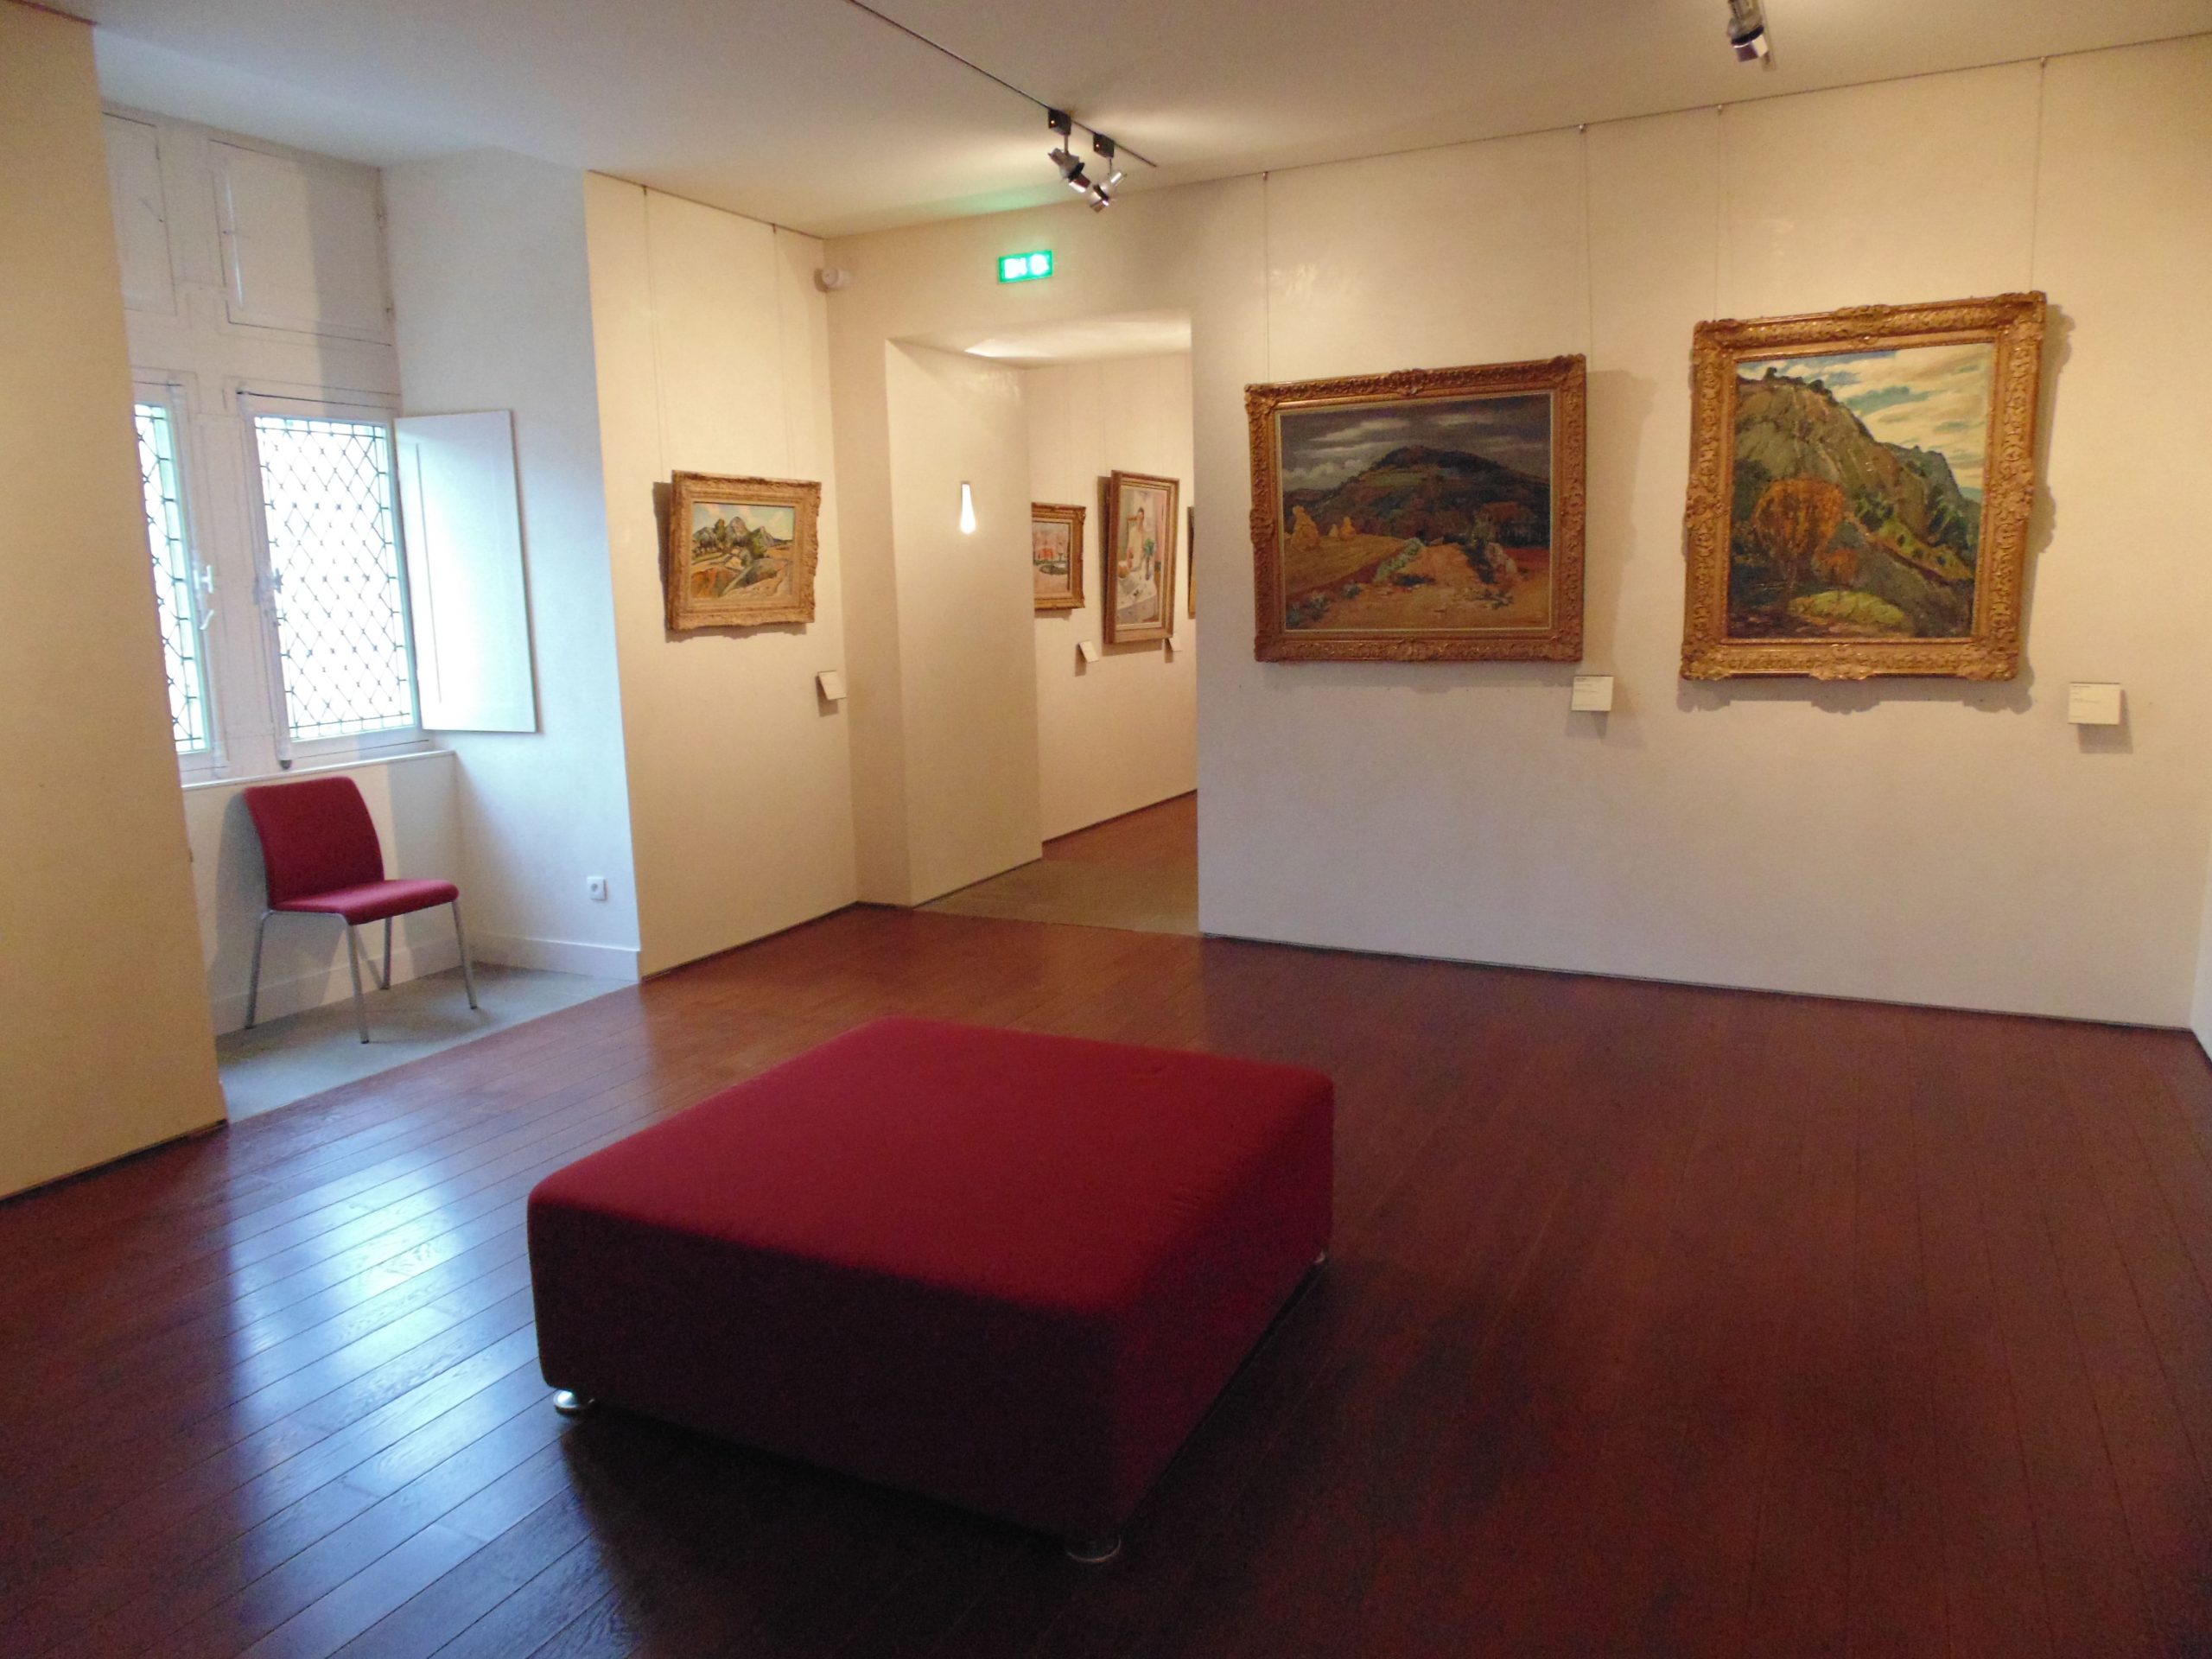 Exposition dans le Musée Toulouse Lautrec à Albi agencé par SAFRA Agencement